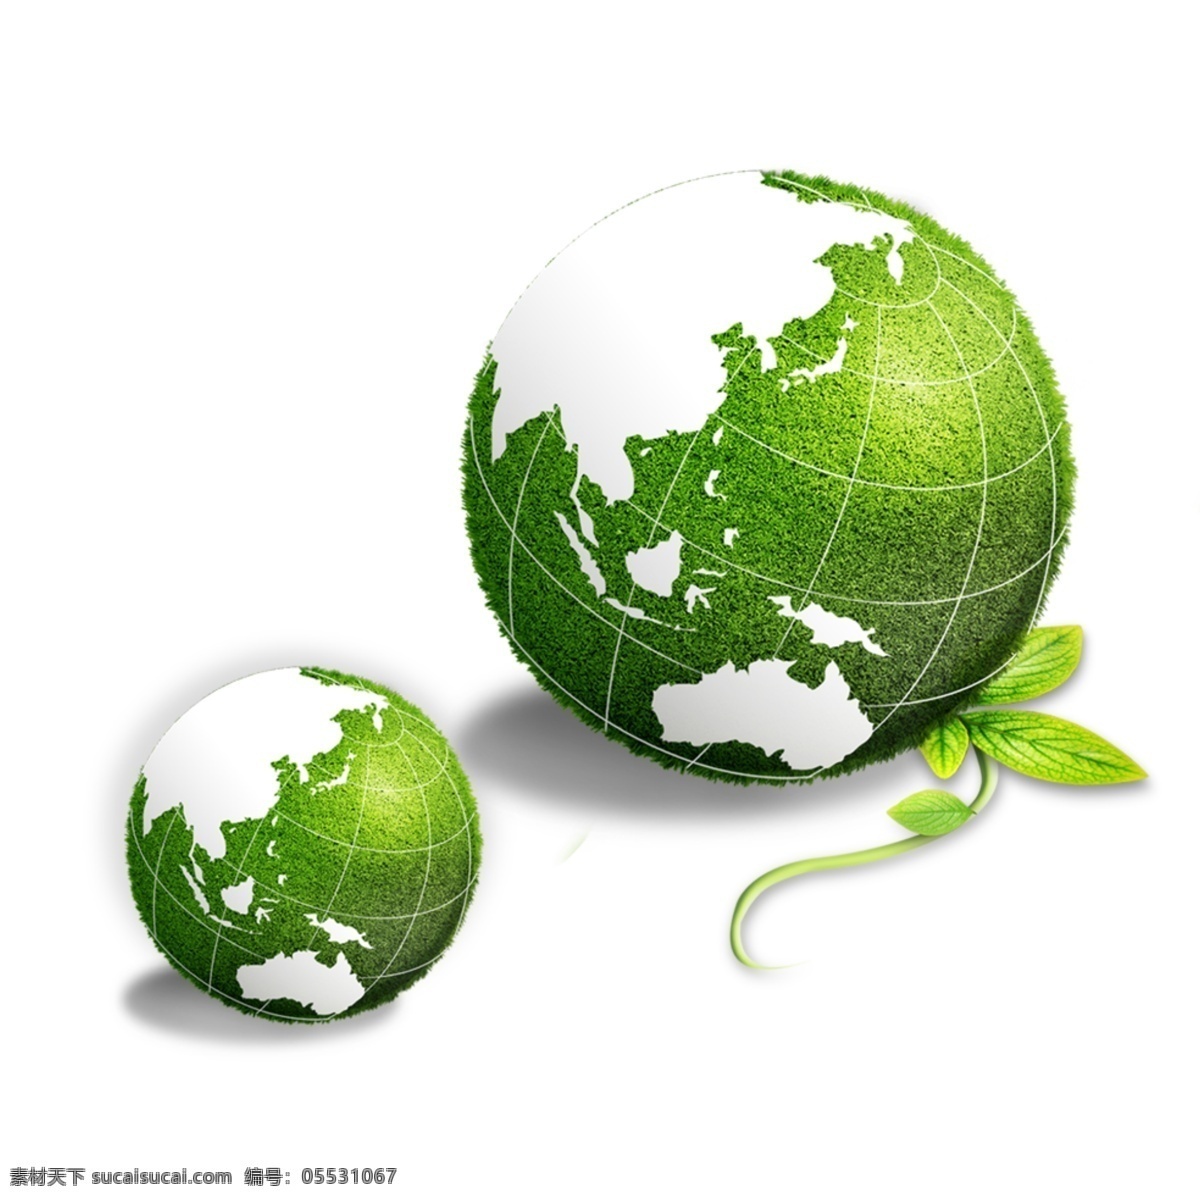 节能环保 绿色环保 环保 节能 环保设计 绿色 节能减排 节能展板 节能宣传 节能设计 节约能源 宣传节能 节能低碳 绿色节能 低碳节能 节能生活 节能绿色 节能背景 低碳环保 分层